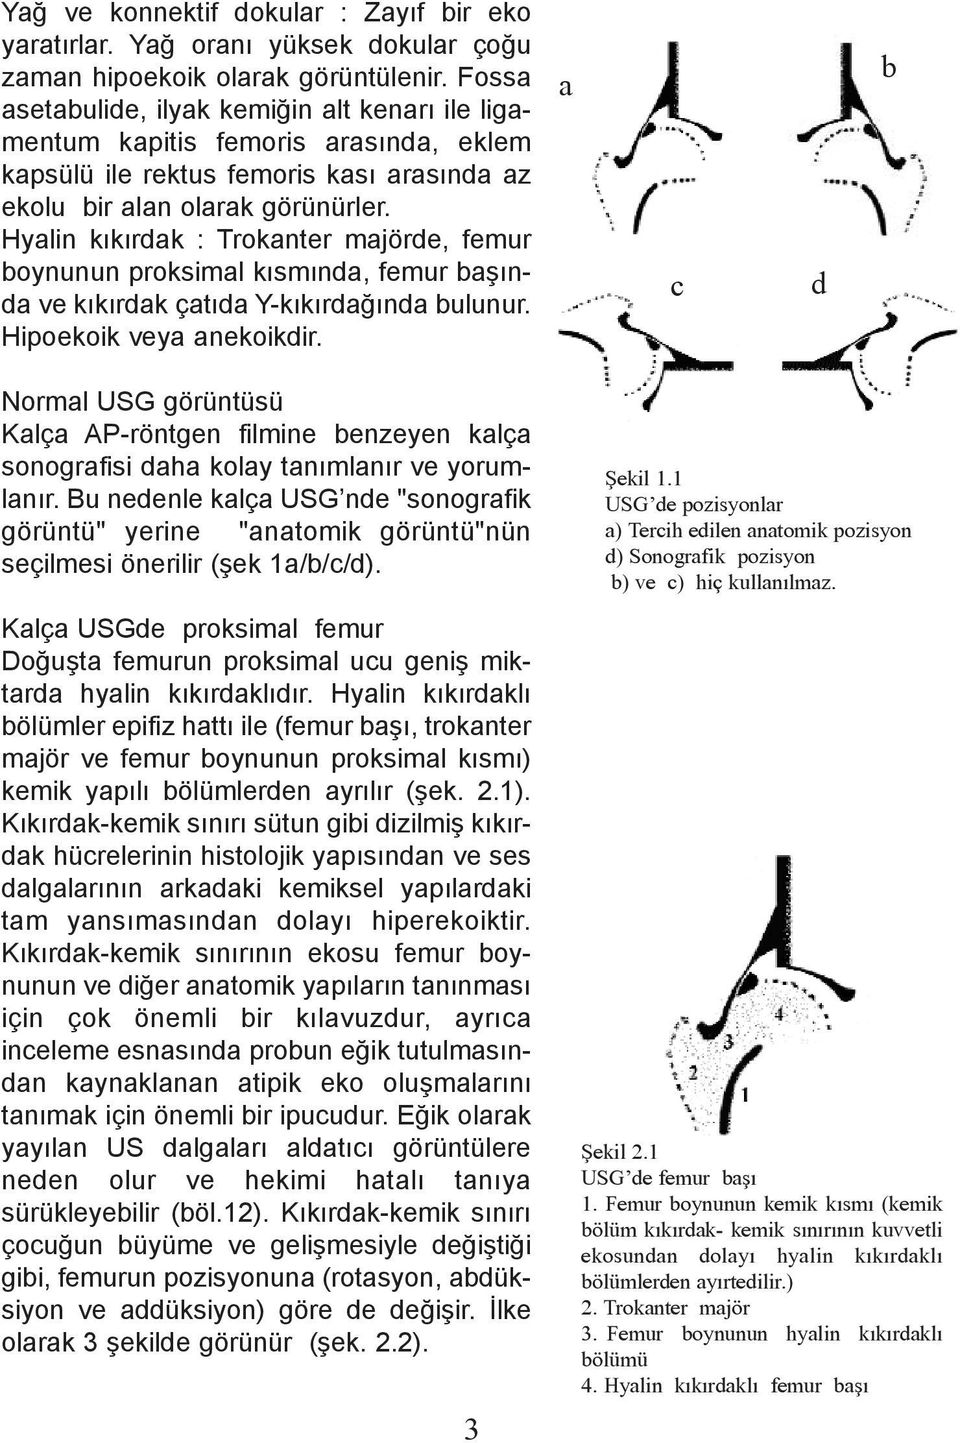 Hyalin kýkýrdak : Trokanter majörde, femur boynunun proksimal kýsmýnda, femur baþýnda ve kýkýrdak çatýda Y-kýkýrdaðýnda bulunur. Hipoekoik veya anekoikdir.